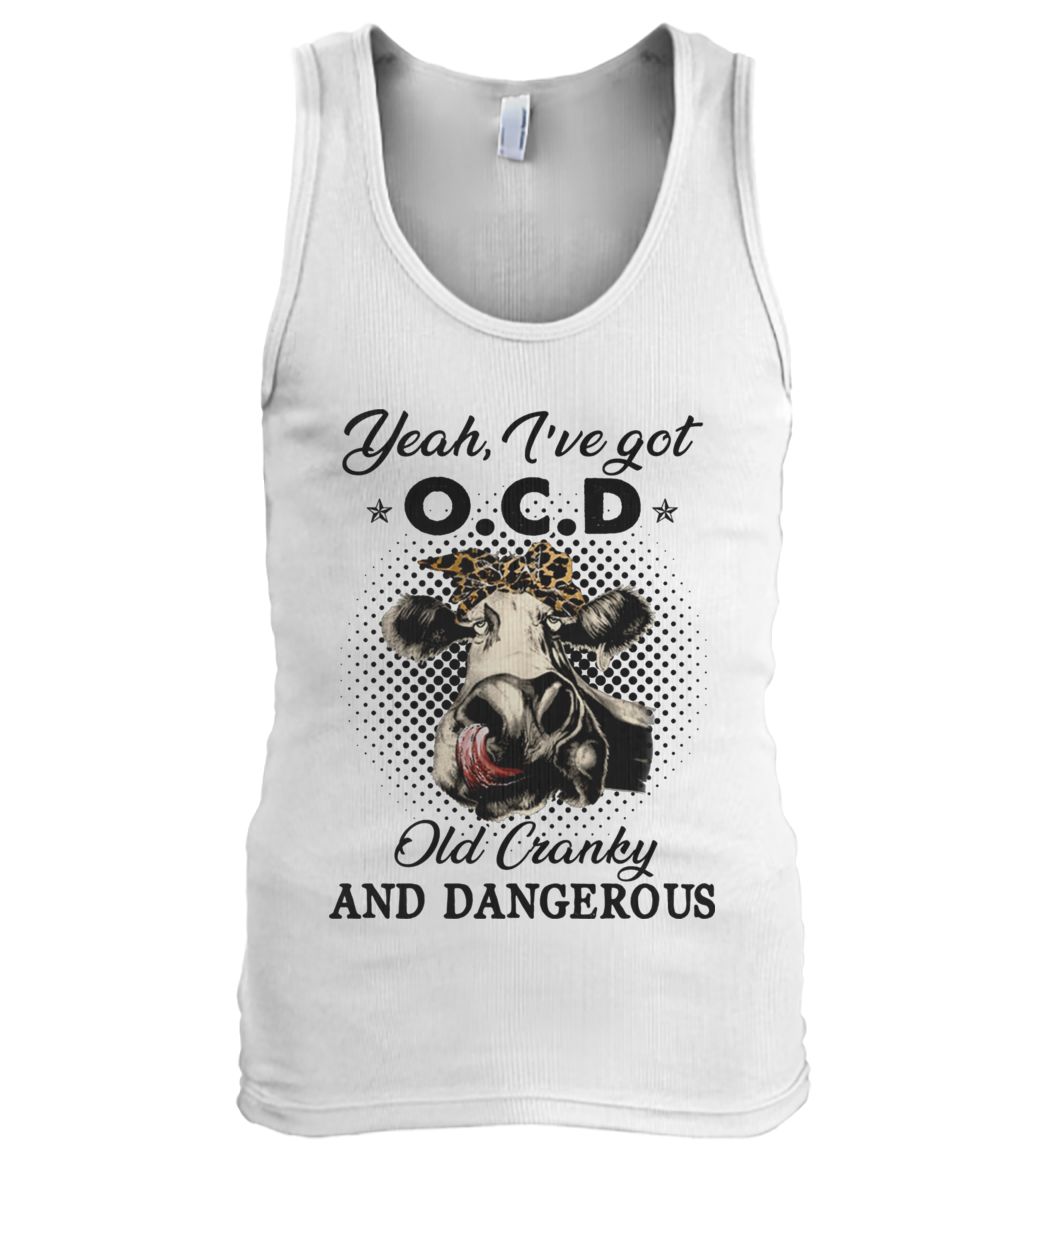 I've got ocd old cranky and dangerous heifer farmer men's tank top